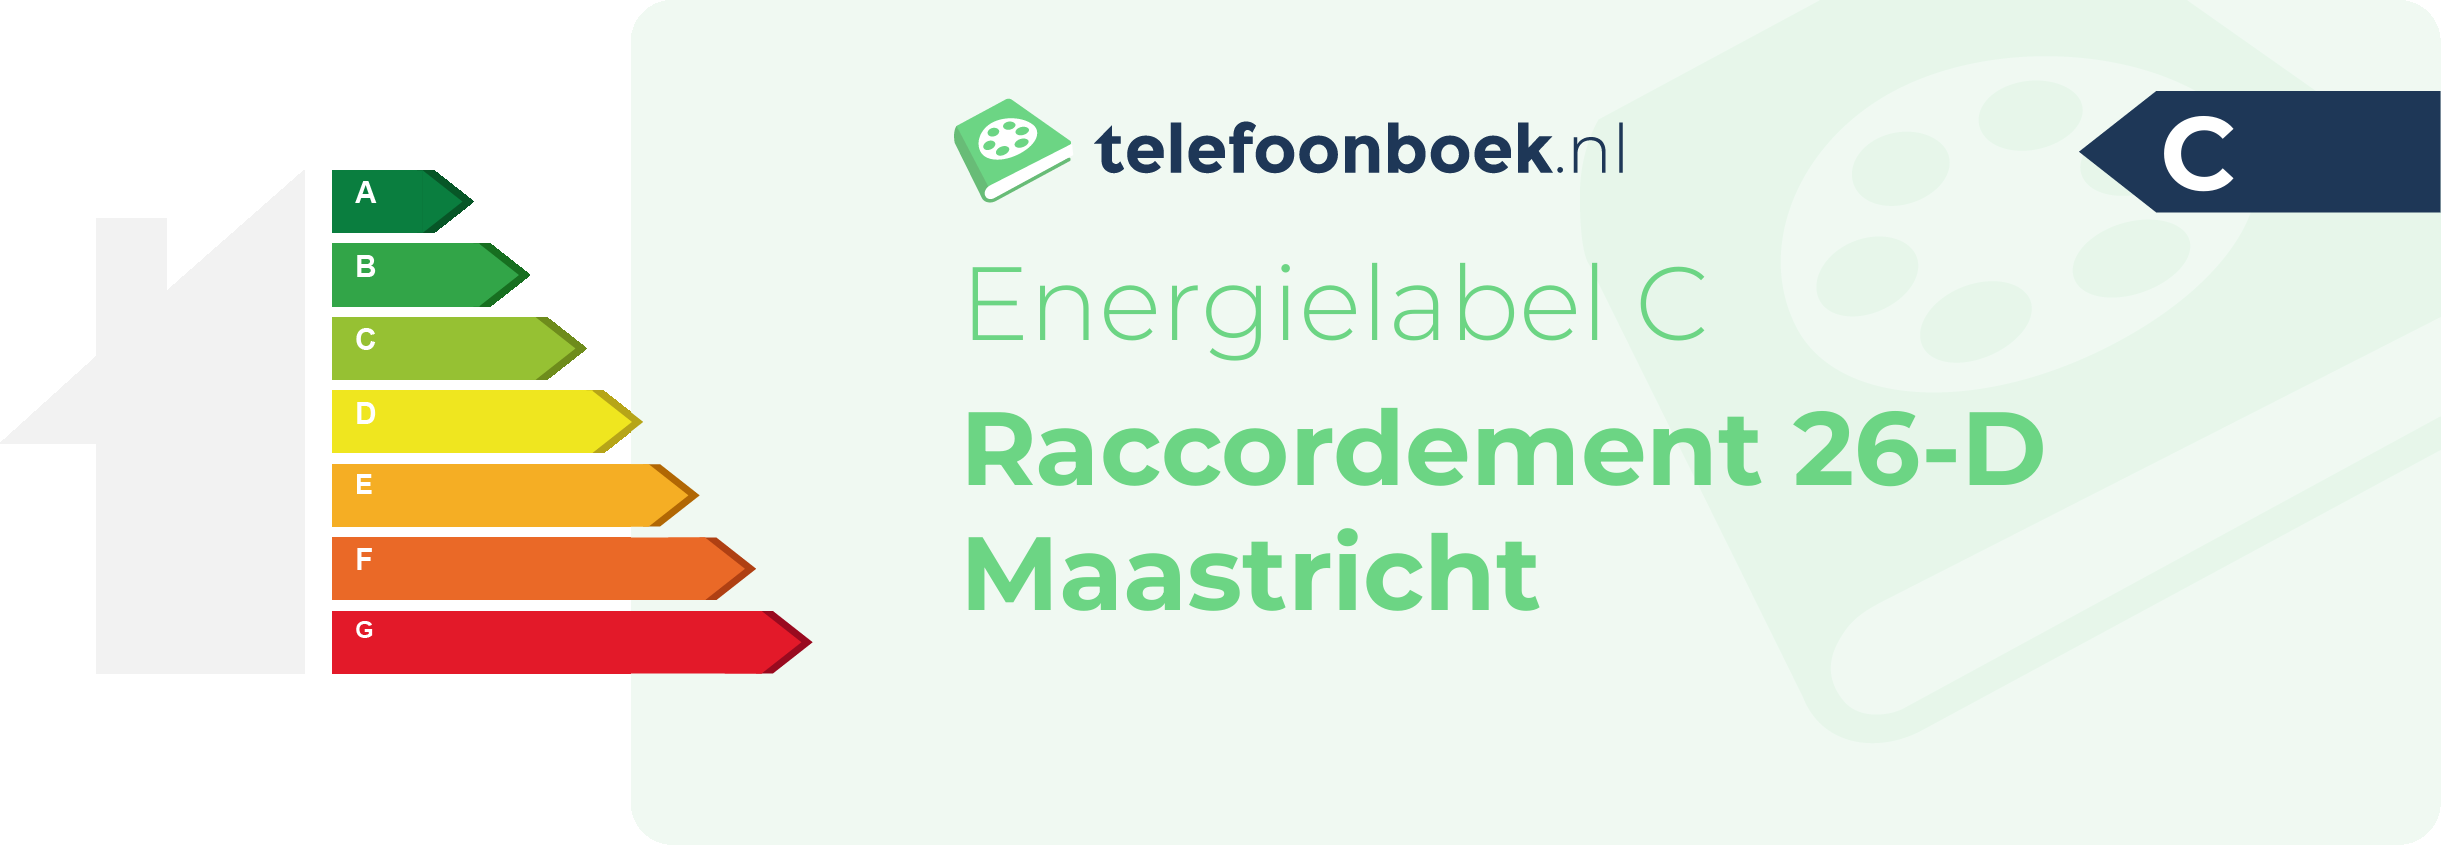 Energielabel Raccordement 26-D Maastricht